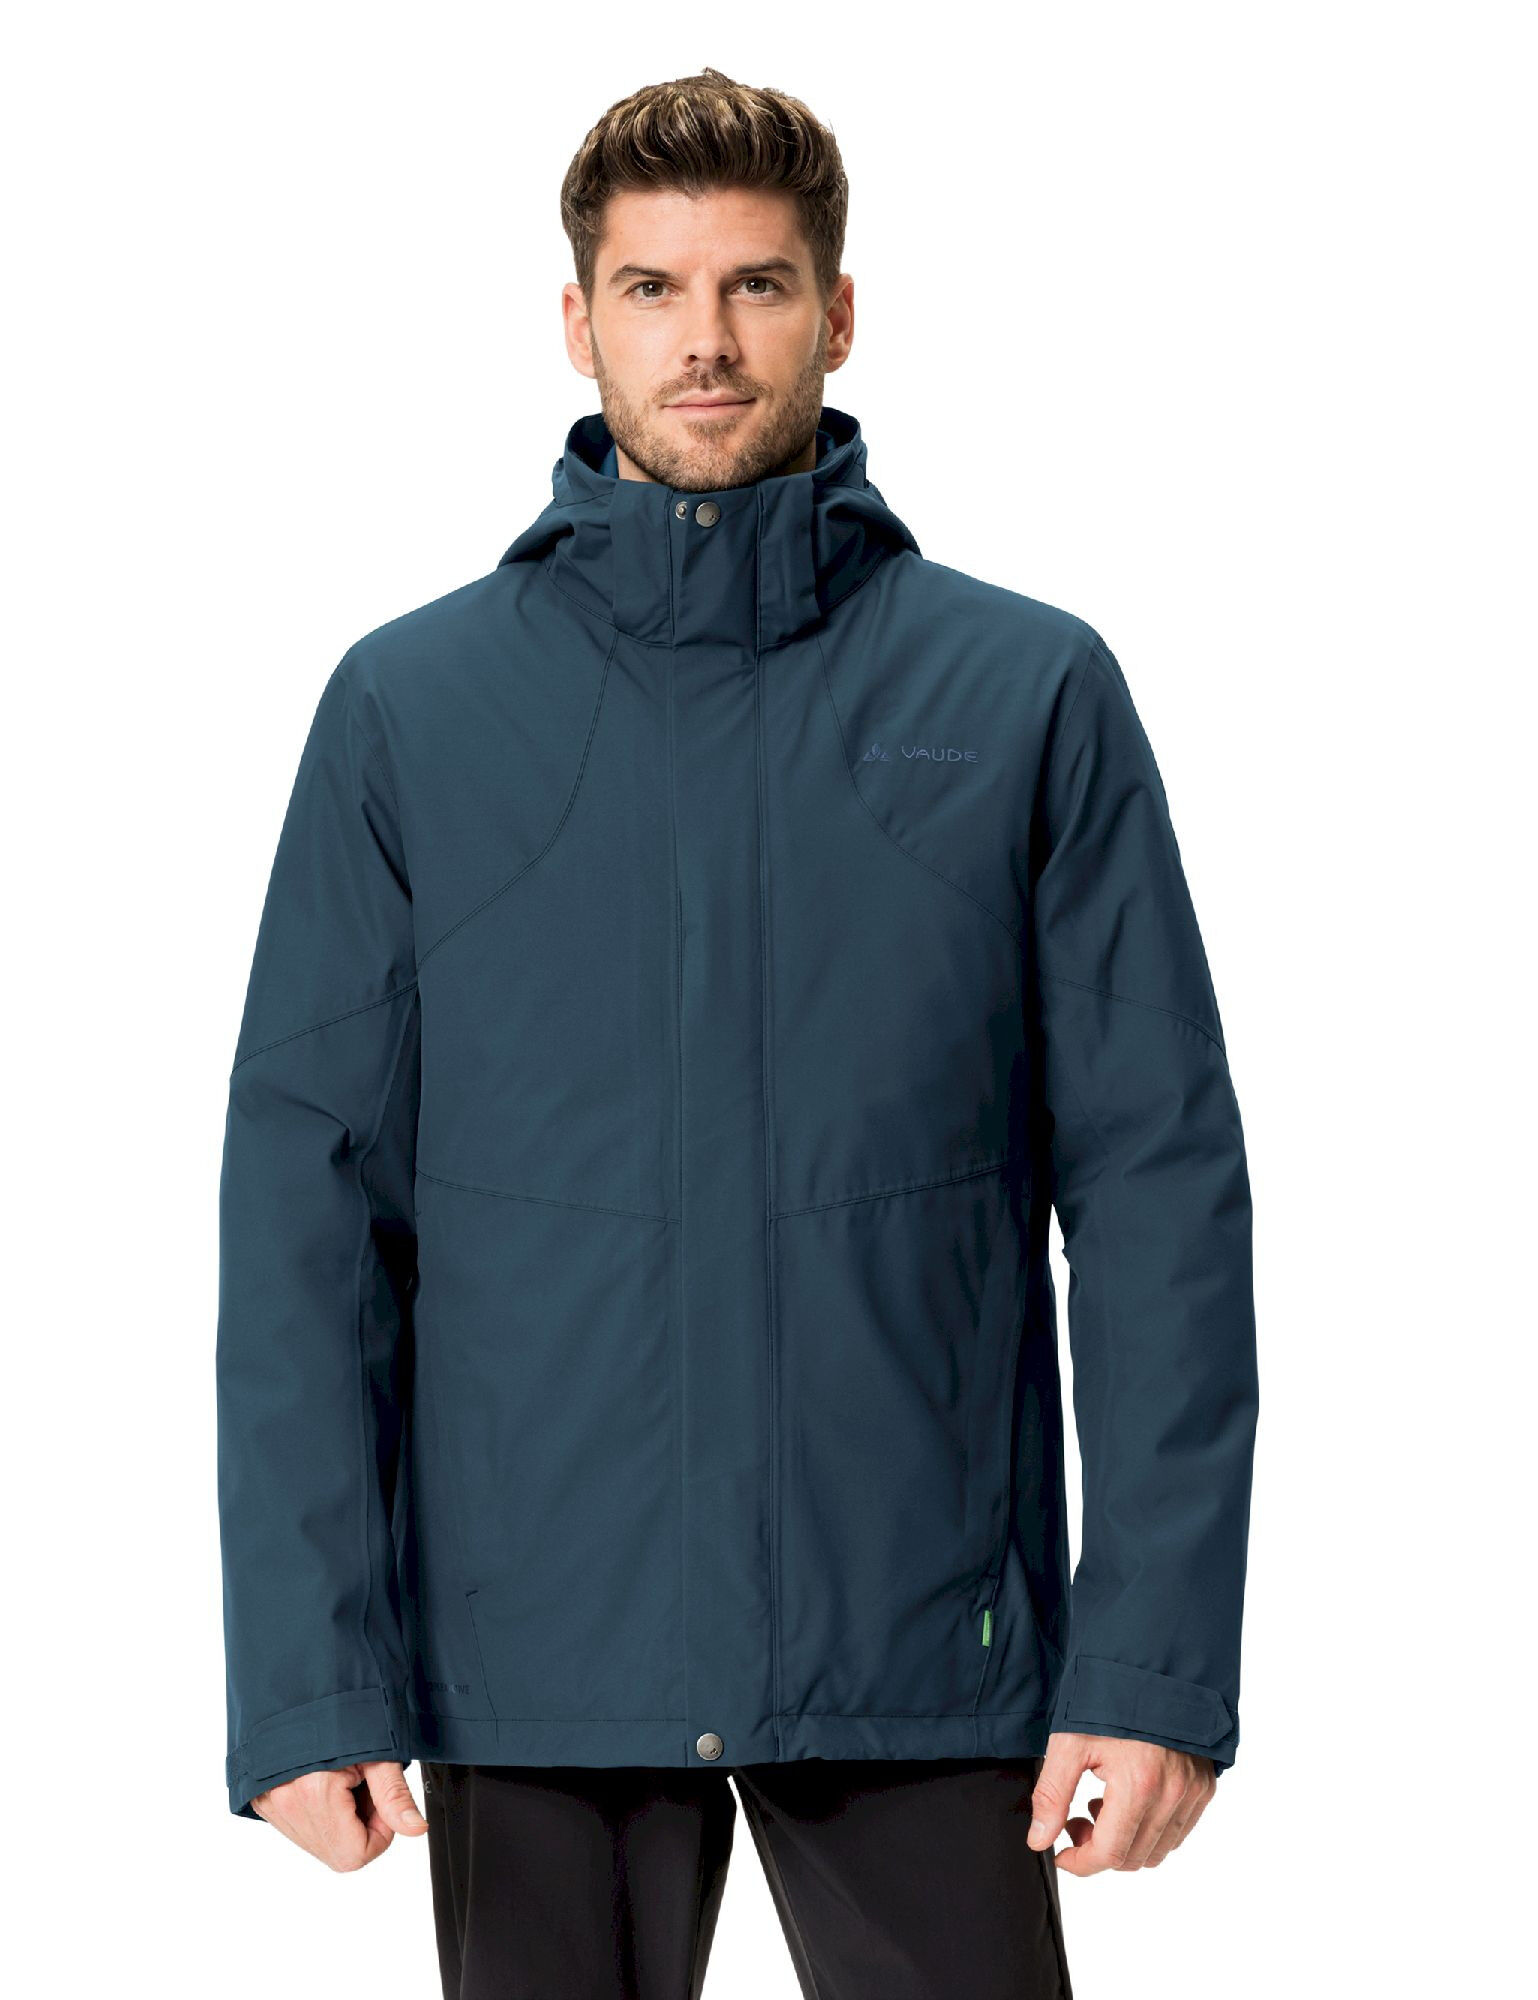 Vaude Caserina 3in1 Jacket II - 3-in-1 jacket - Men's